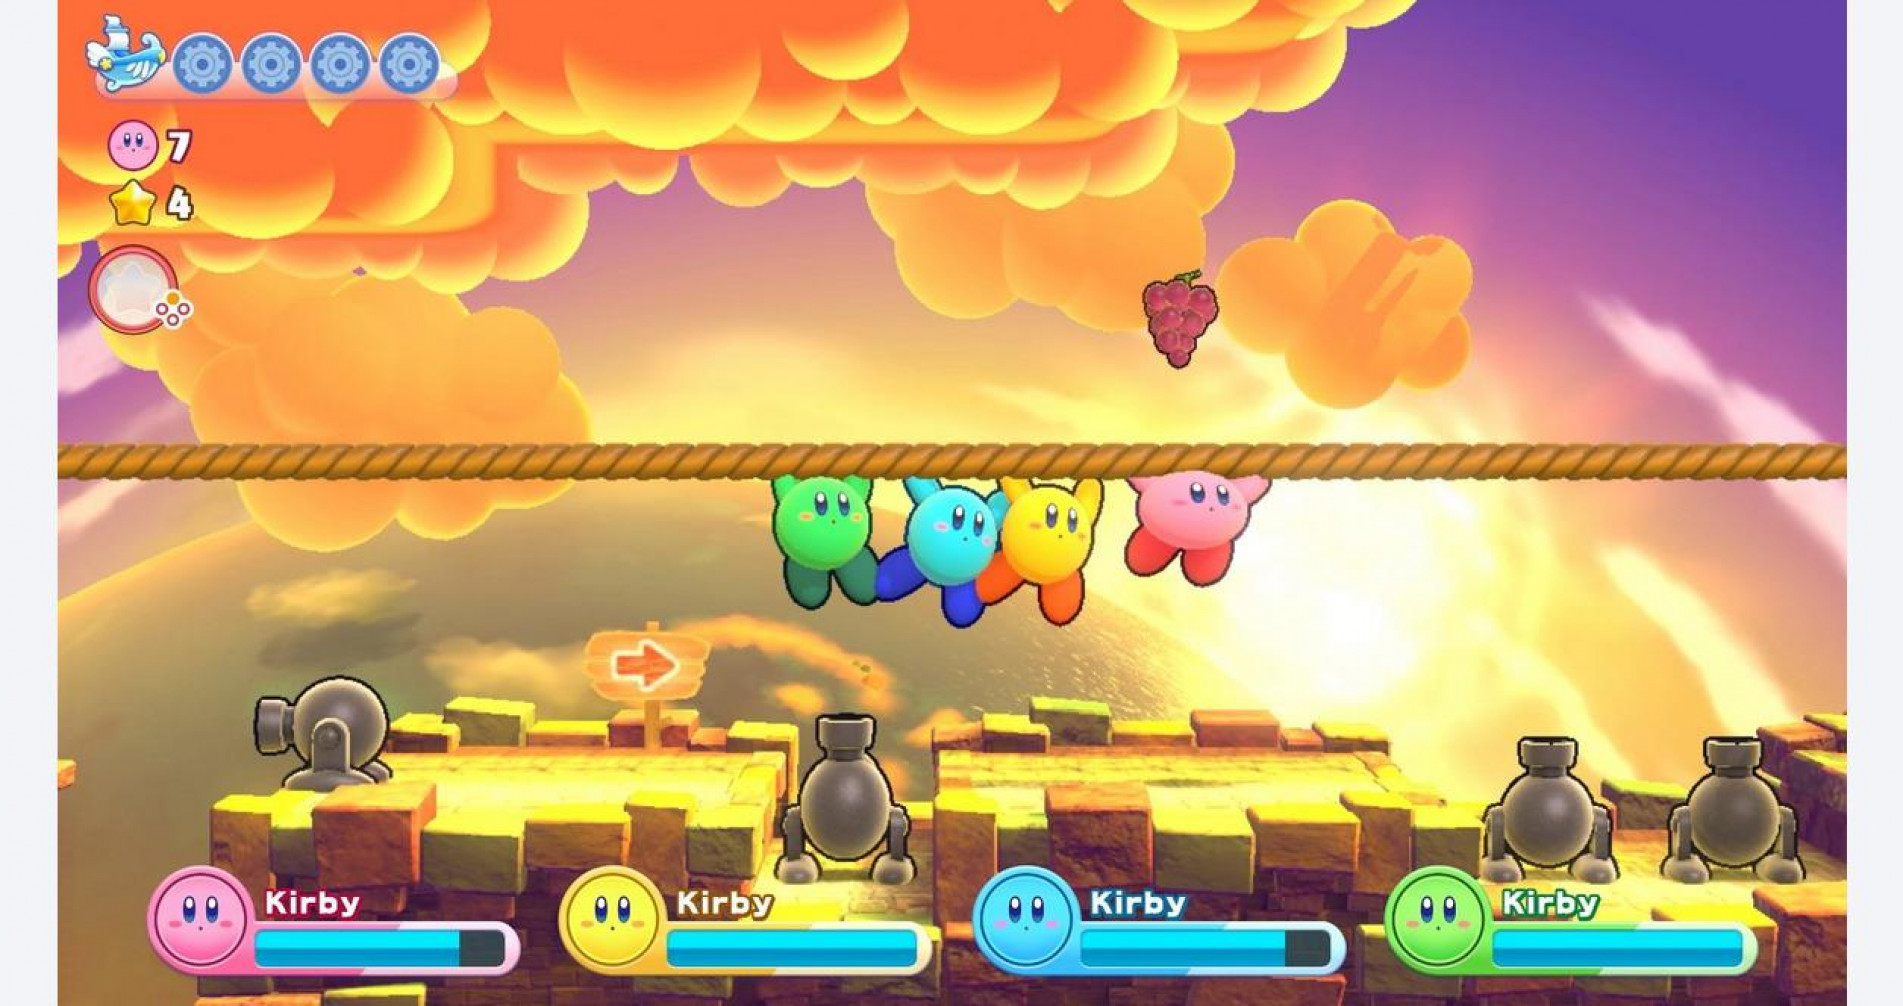 Kirby está de volta em um novo jogo multiplayer para Switch